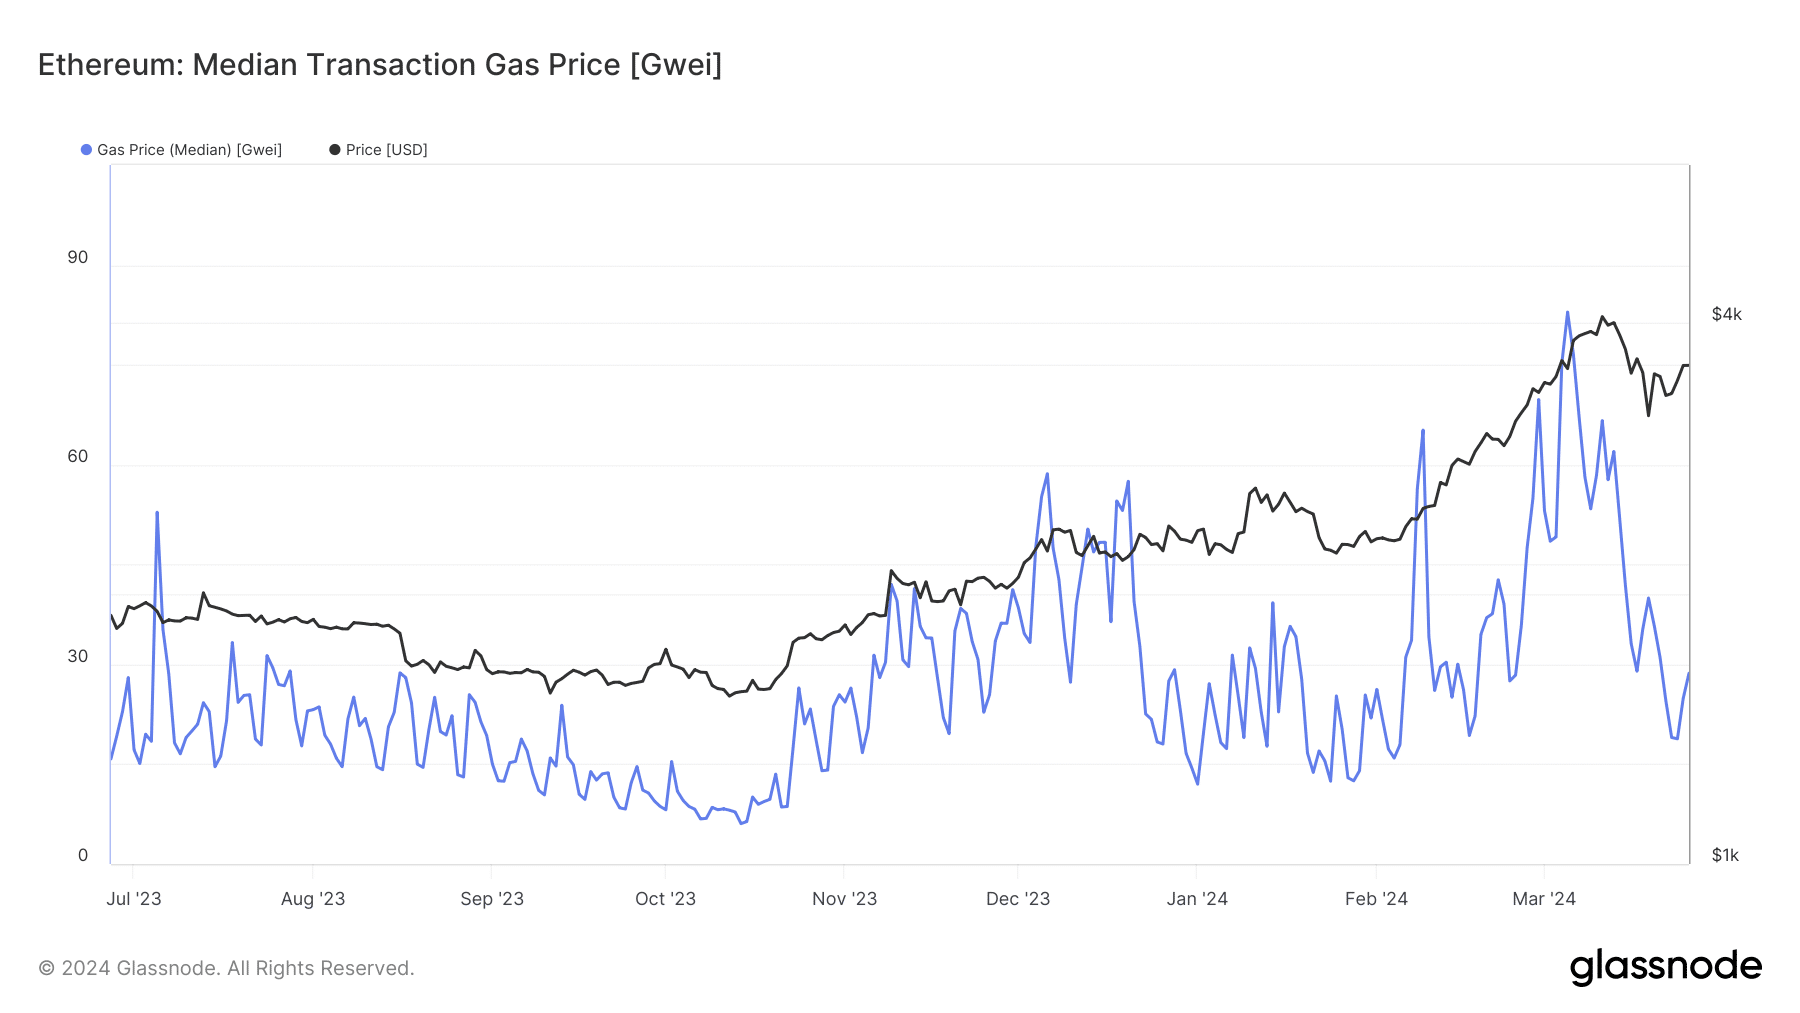 Ethereum average gas price